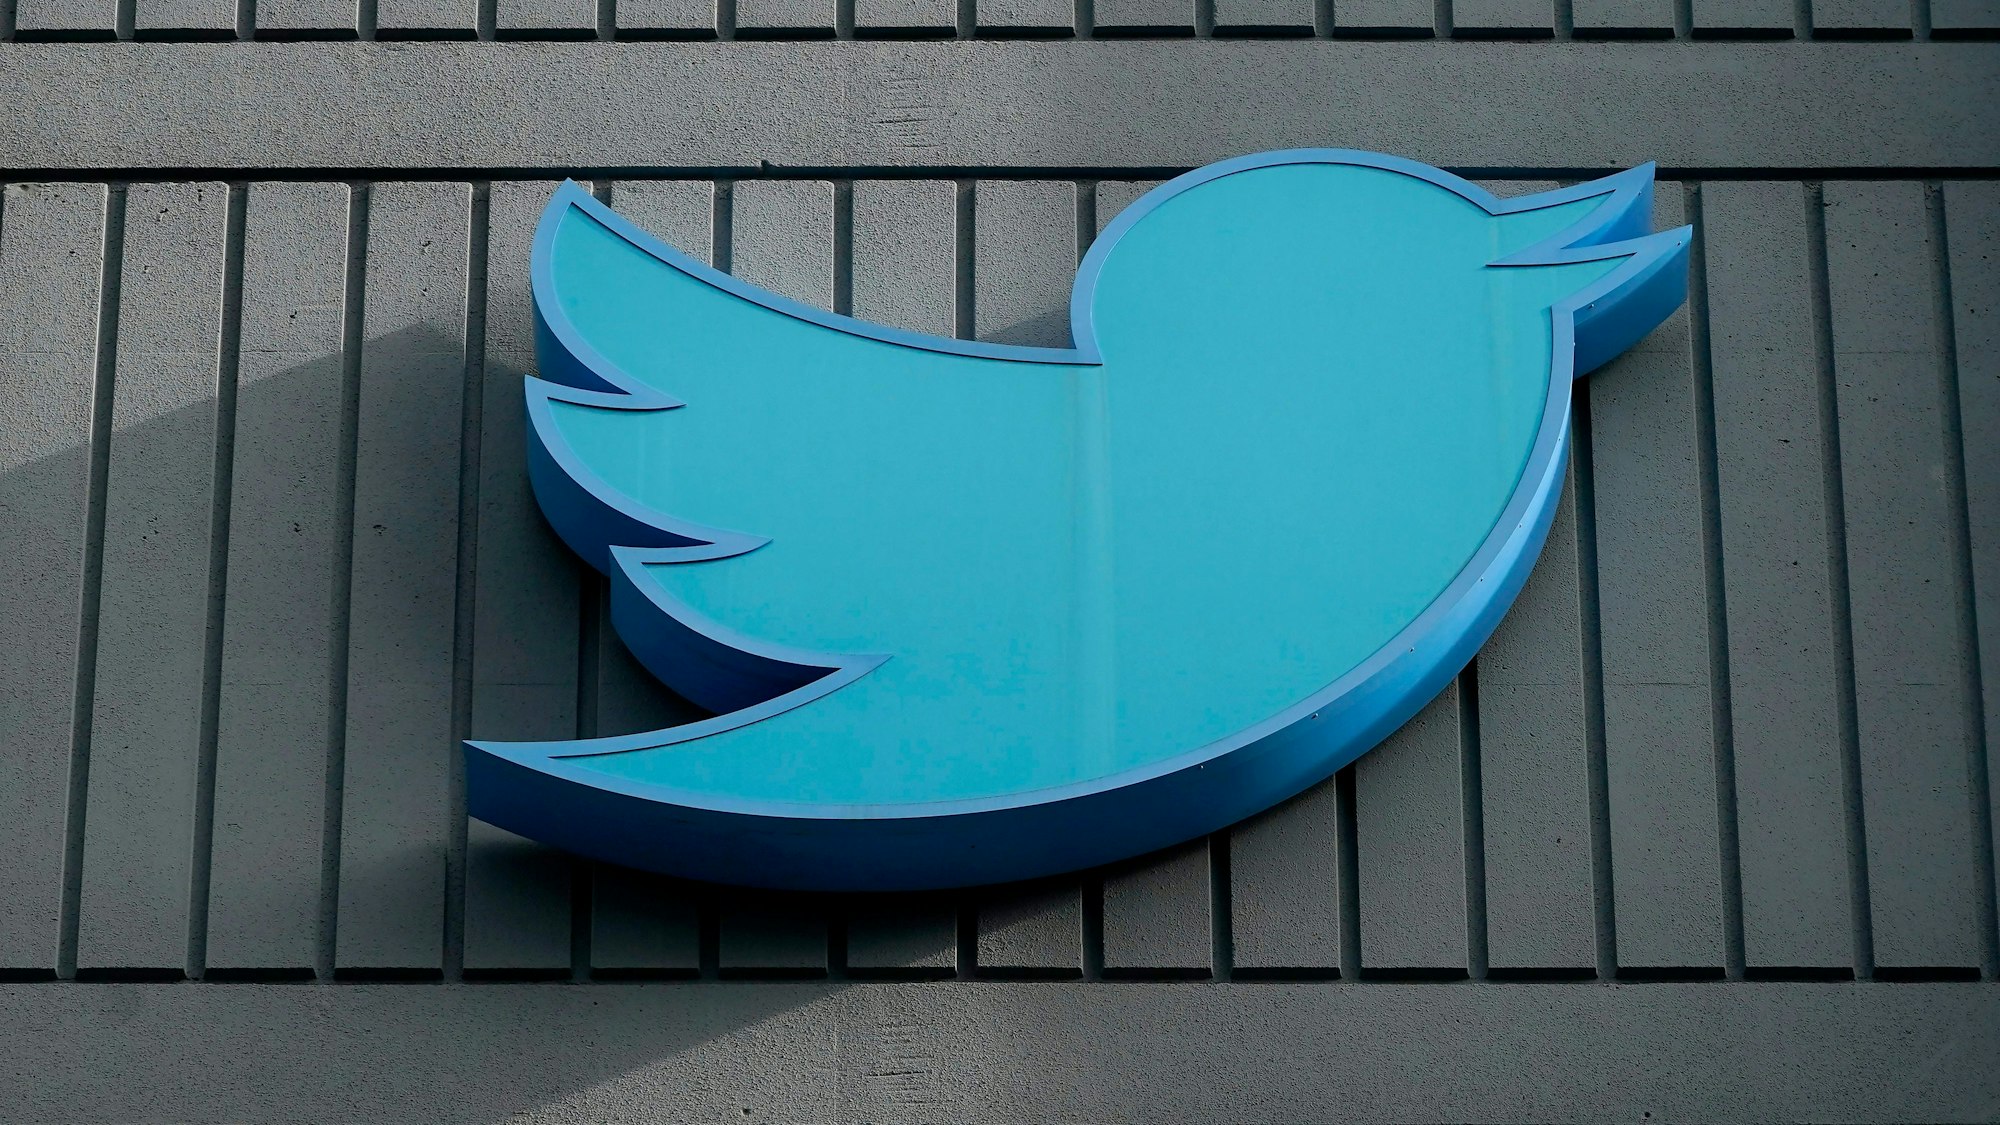 Das Logo des sozialen Netzwerks Twitter ist an einem Gebäude der Firmenzentrale zu sehen. (Symbolbild)